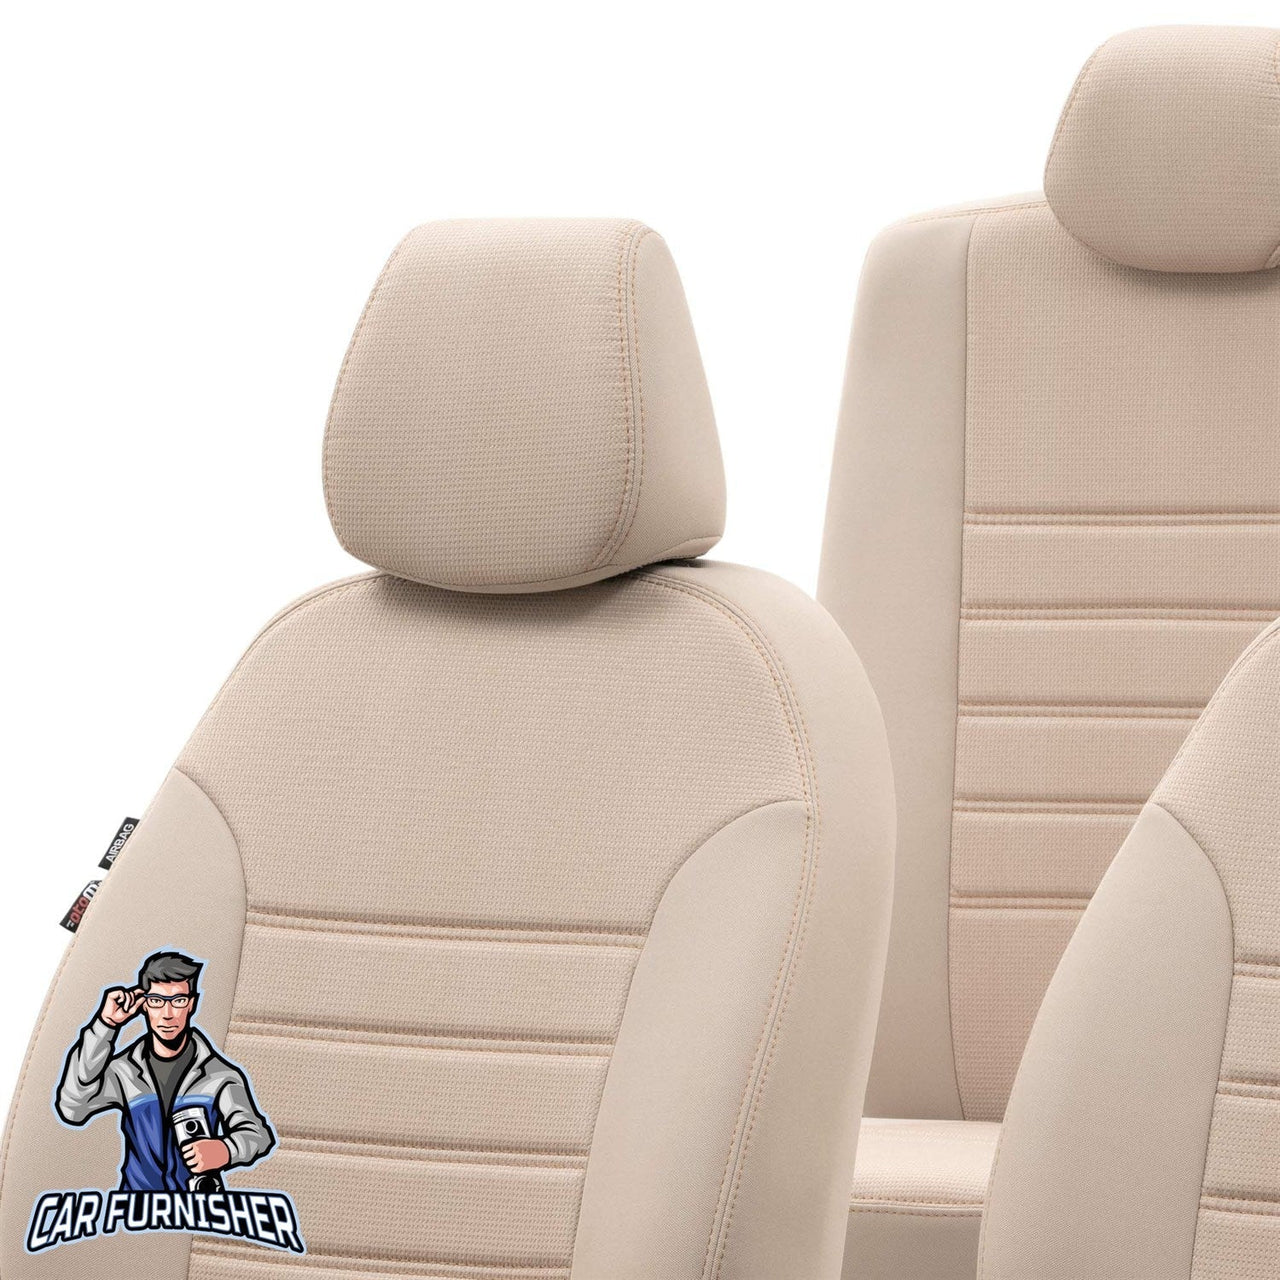 Fiat Tempra Seat Covers Original Jacquard Design Beige Jacquard Fabric